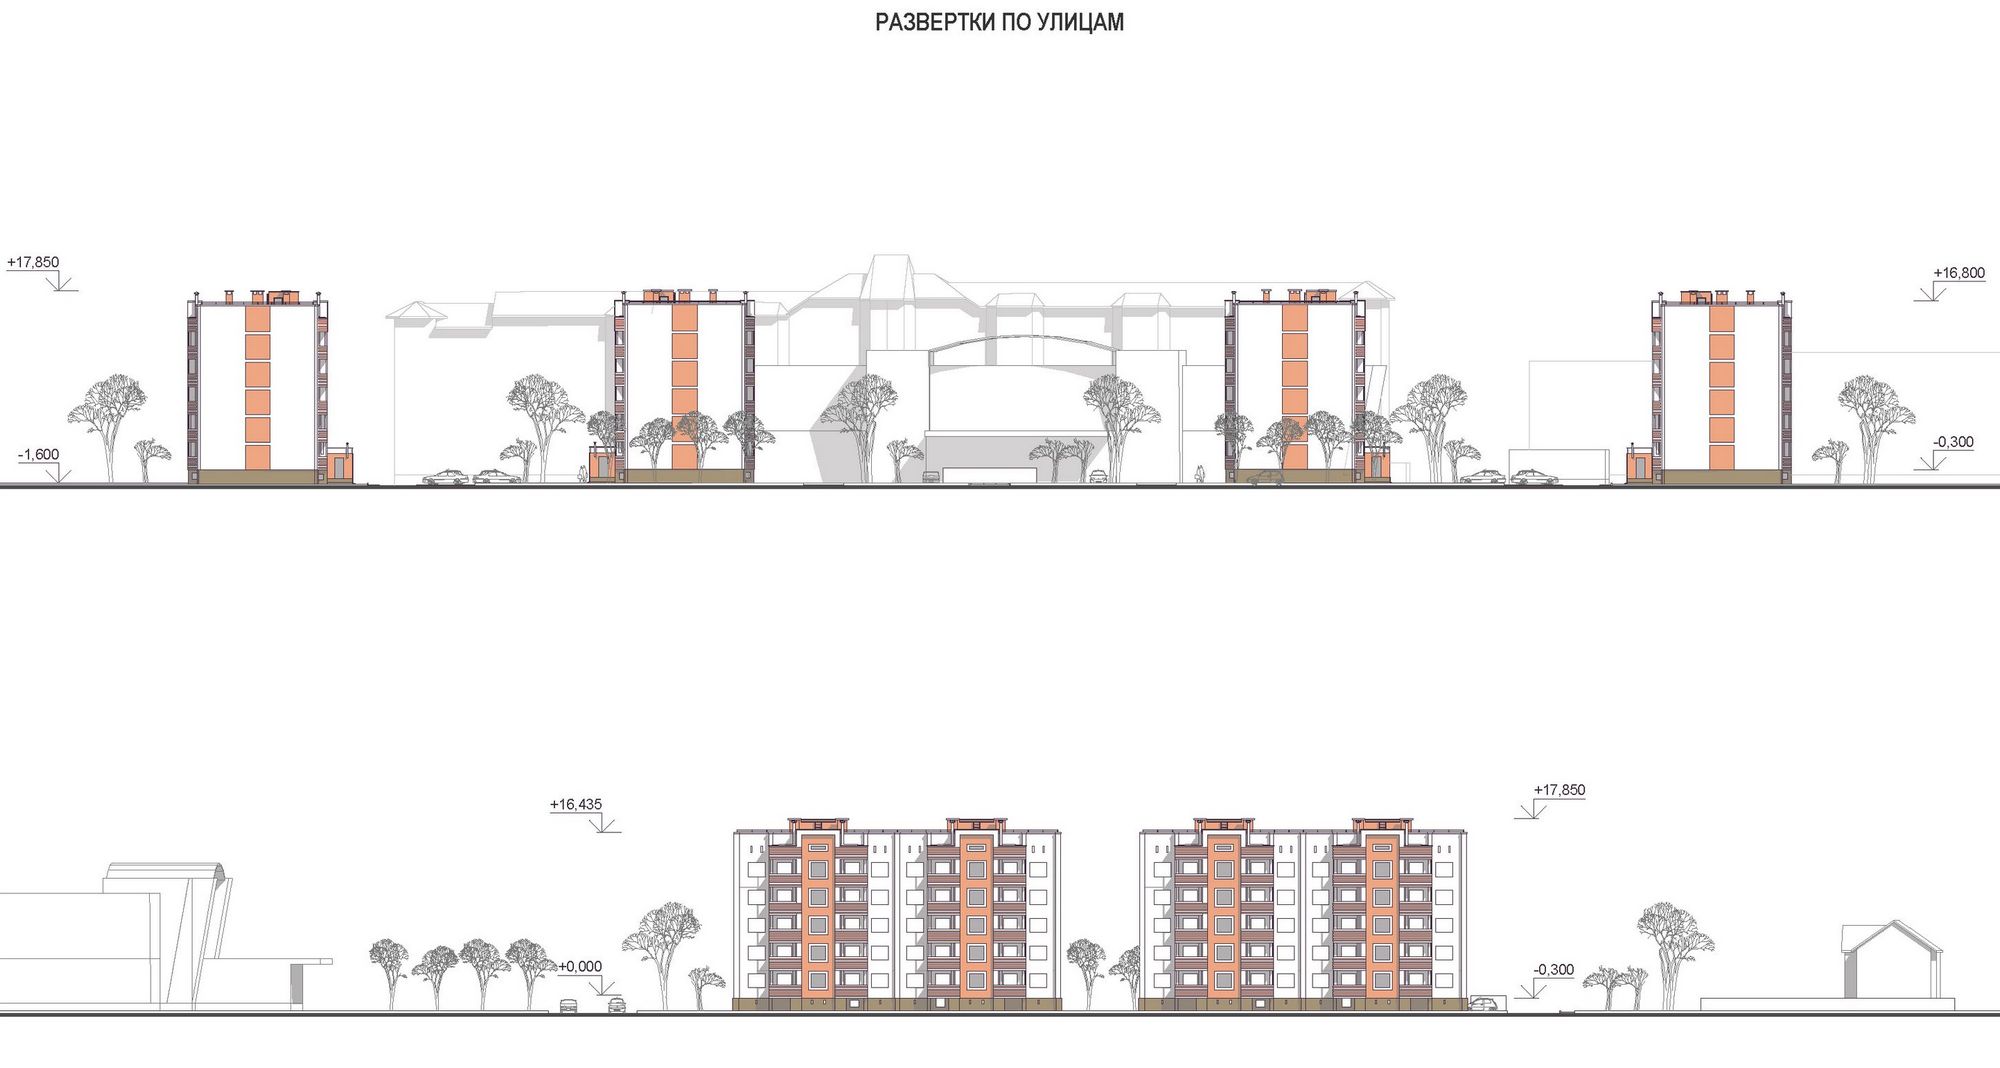 РК Проект. Проект планировки в микрорайоне «Южный» в п. Ува. Номинация: Комплексный проект мало- и средне-этажной застройки